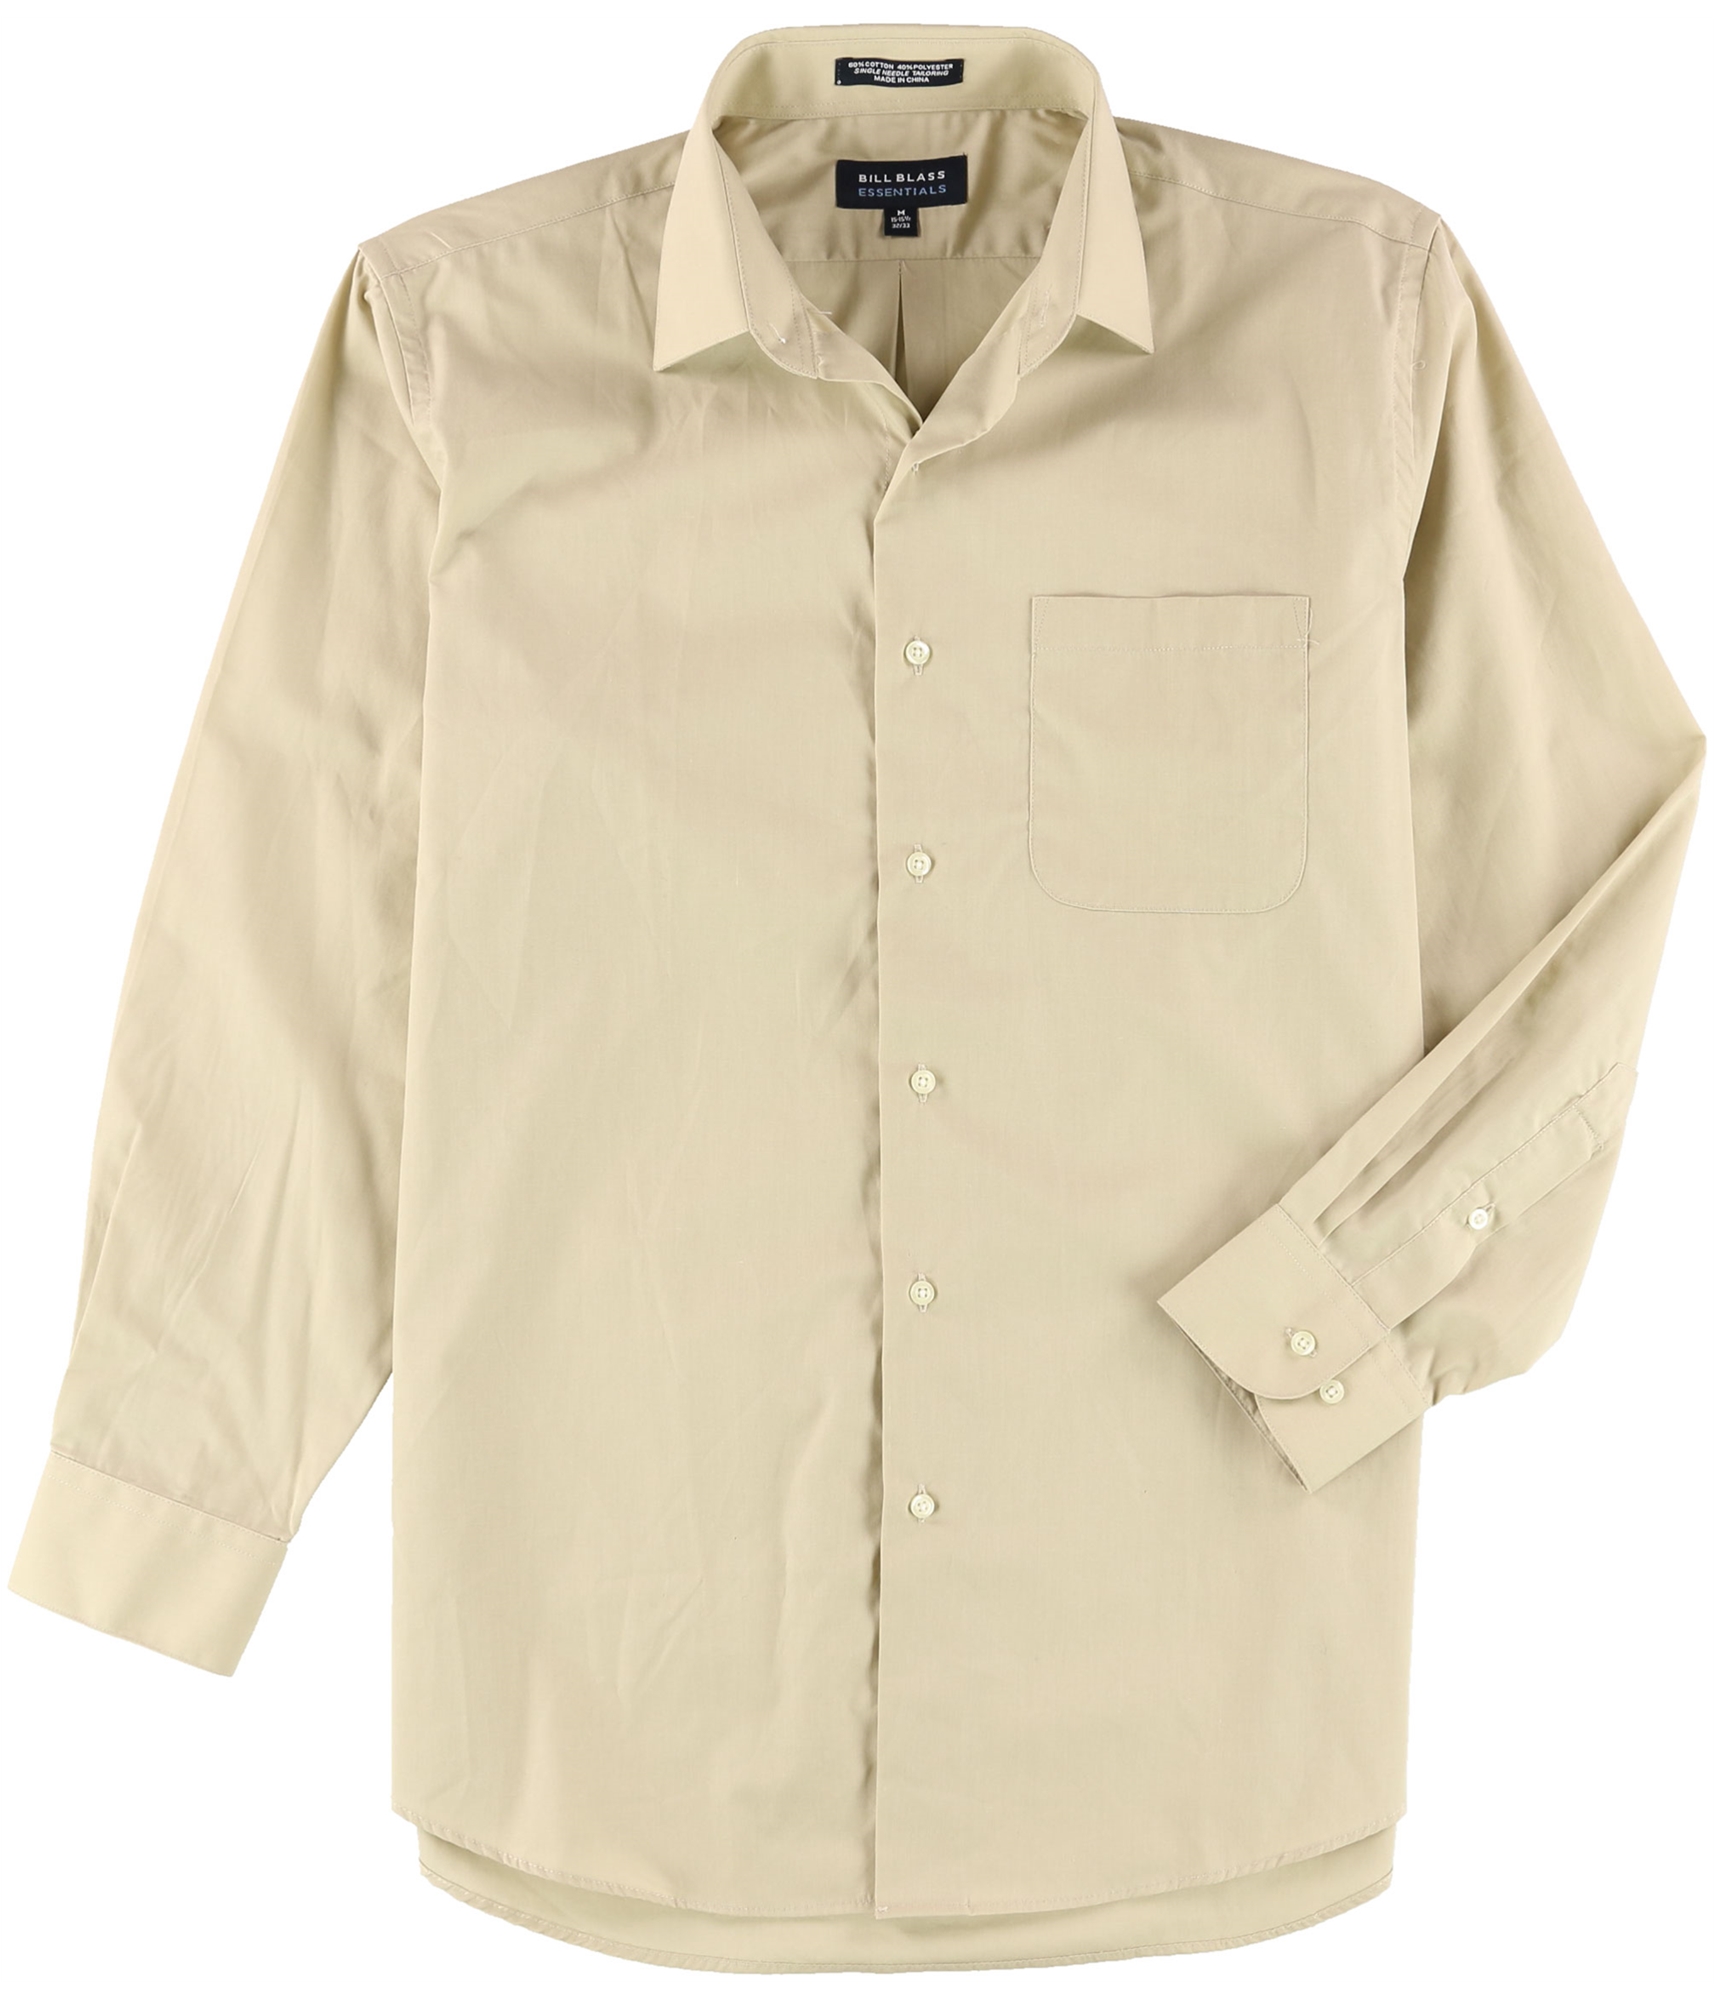 Bill Blass Mens Basic Button Up Dress Shirt beige 15-15 1/2 | eBay